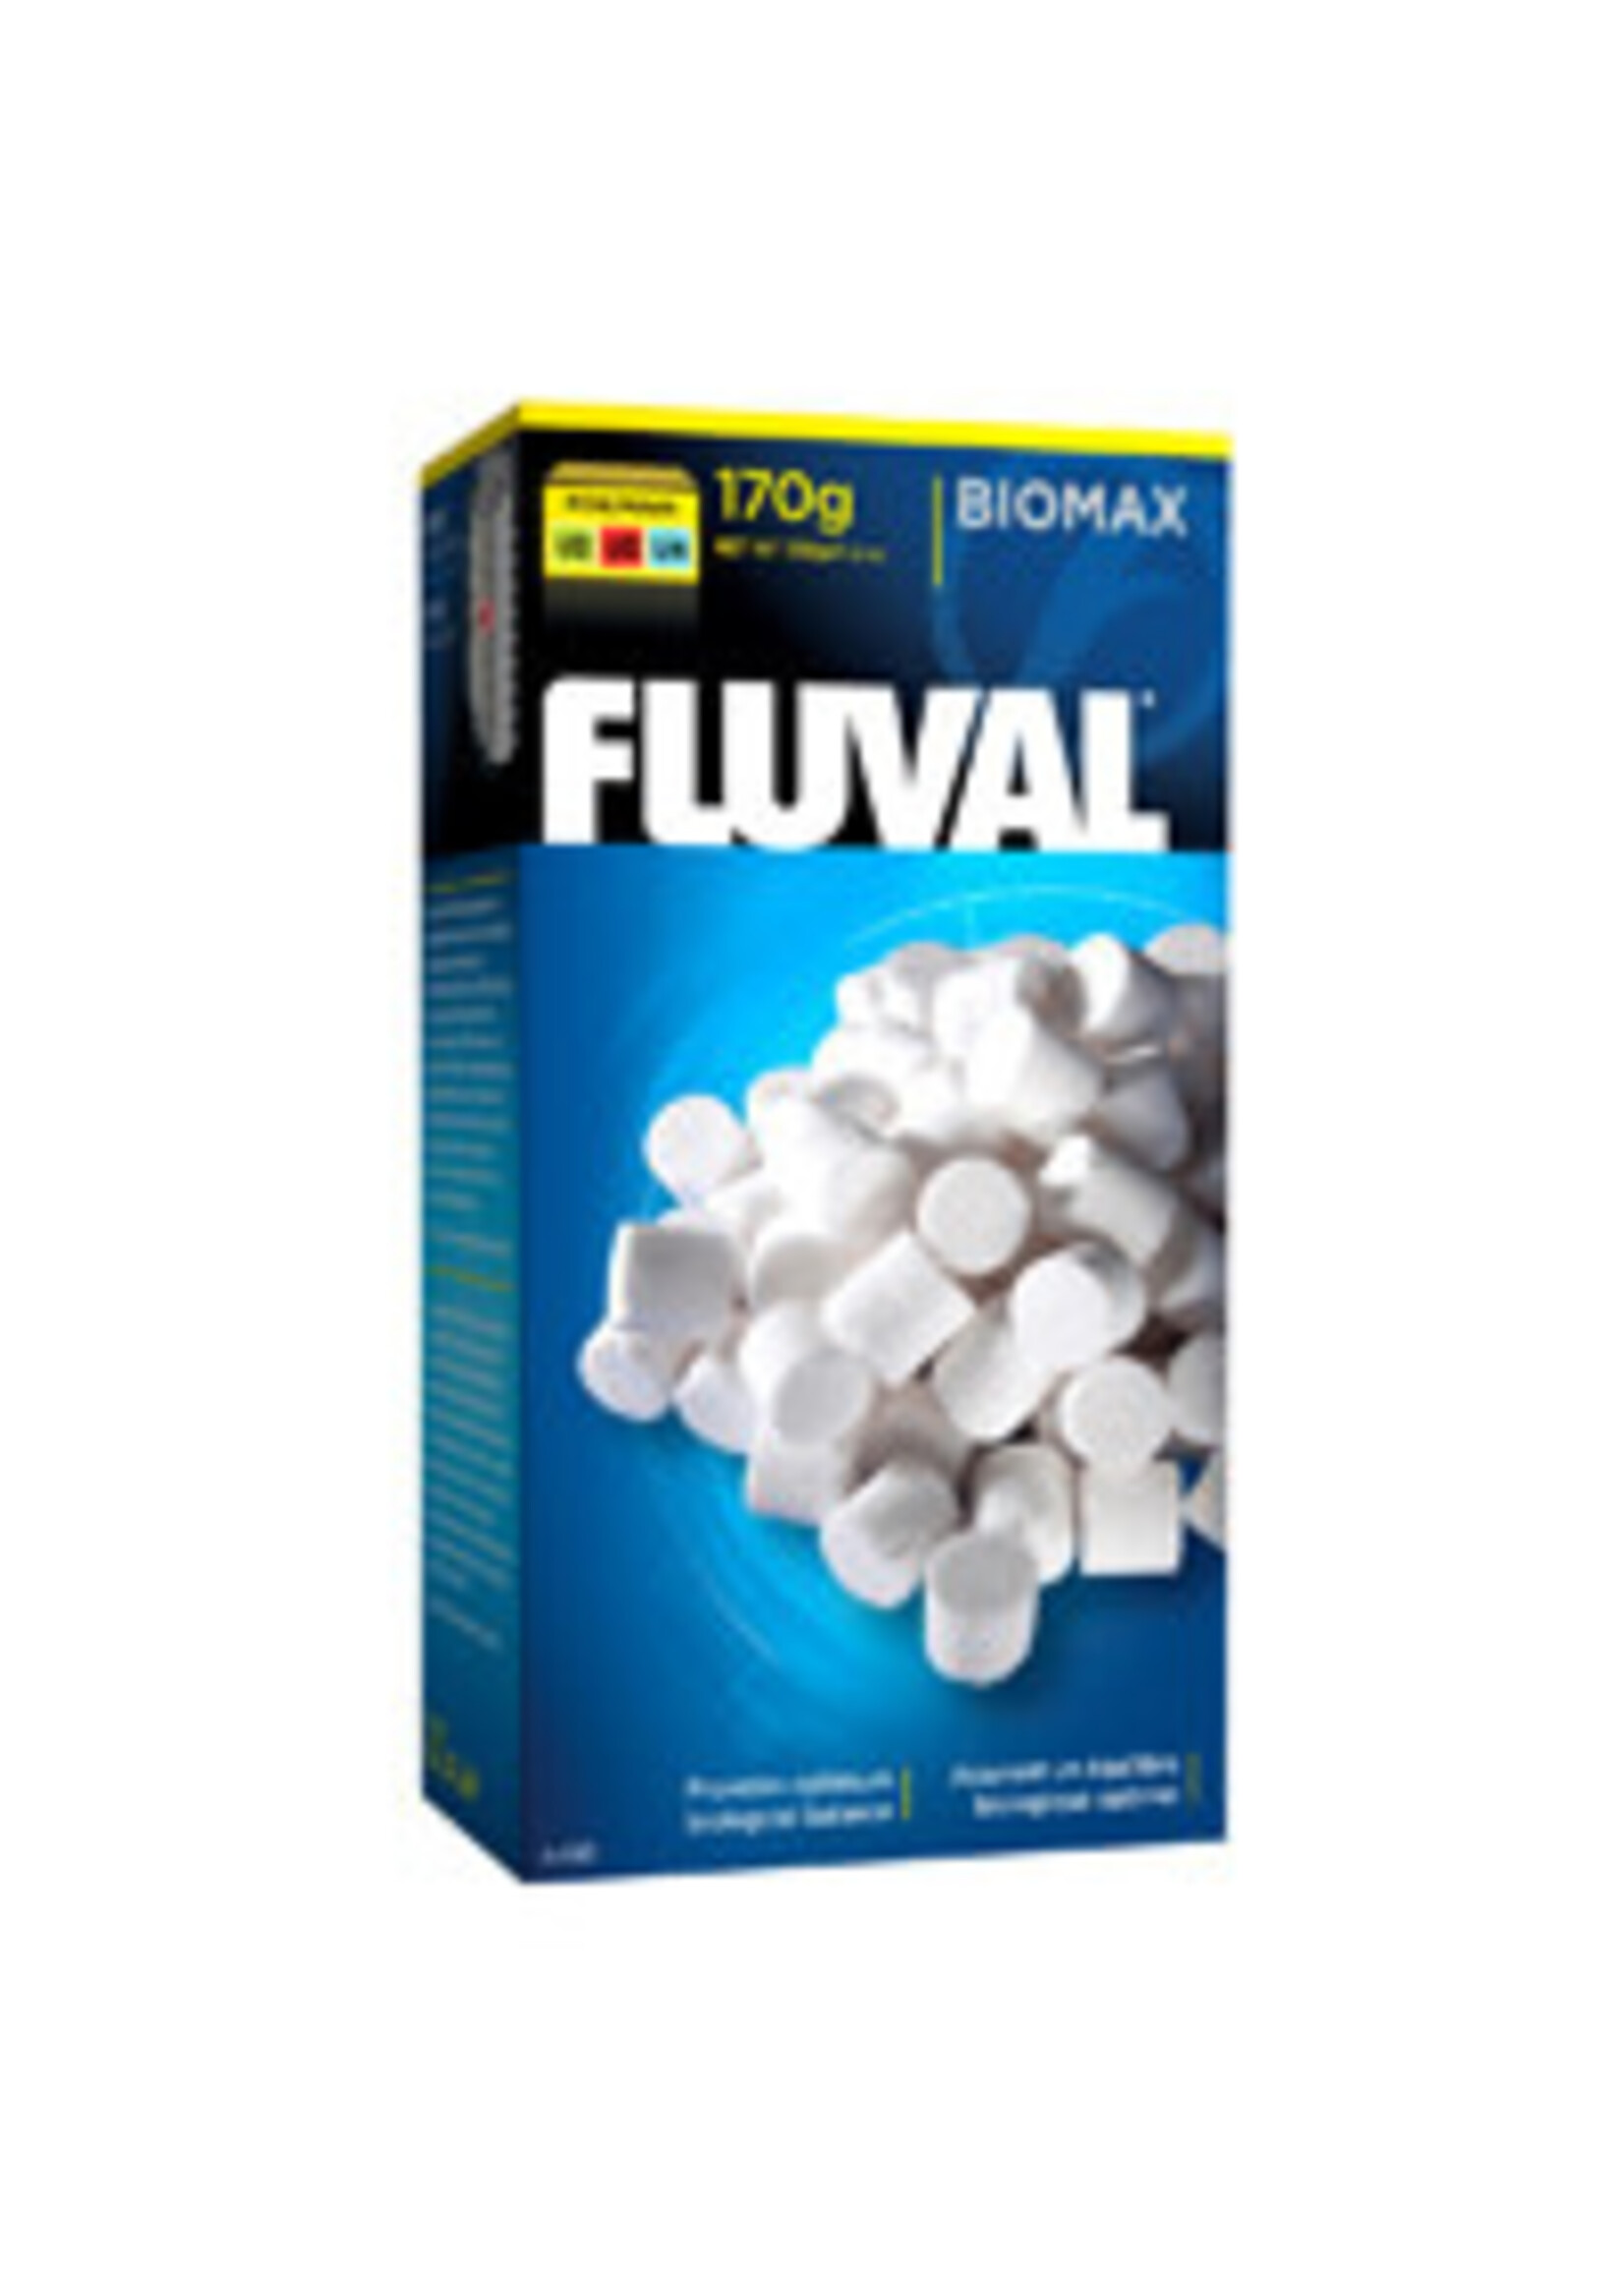 Fluval Fluval Underwater Filter BioMax 110g